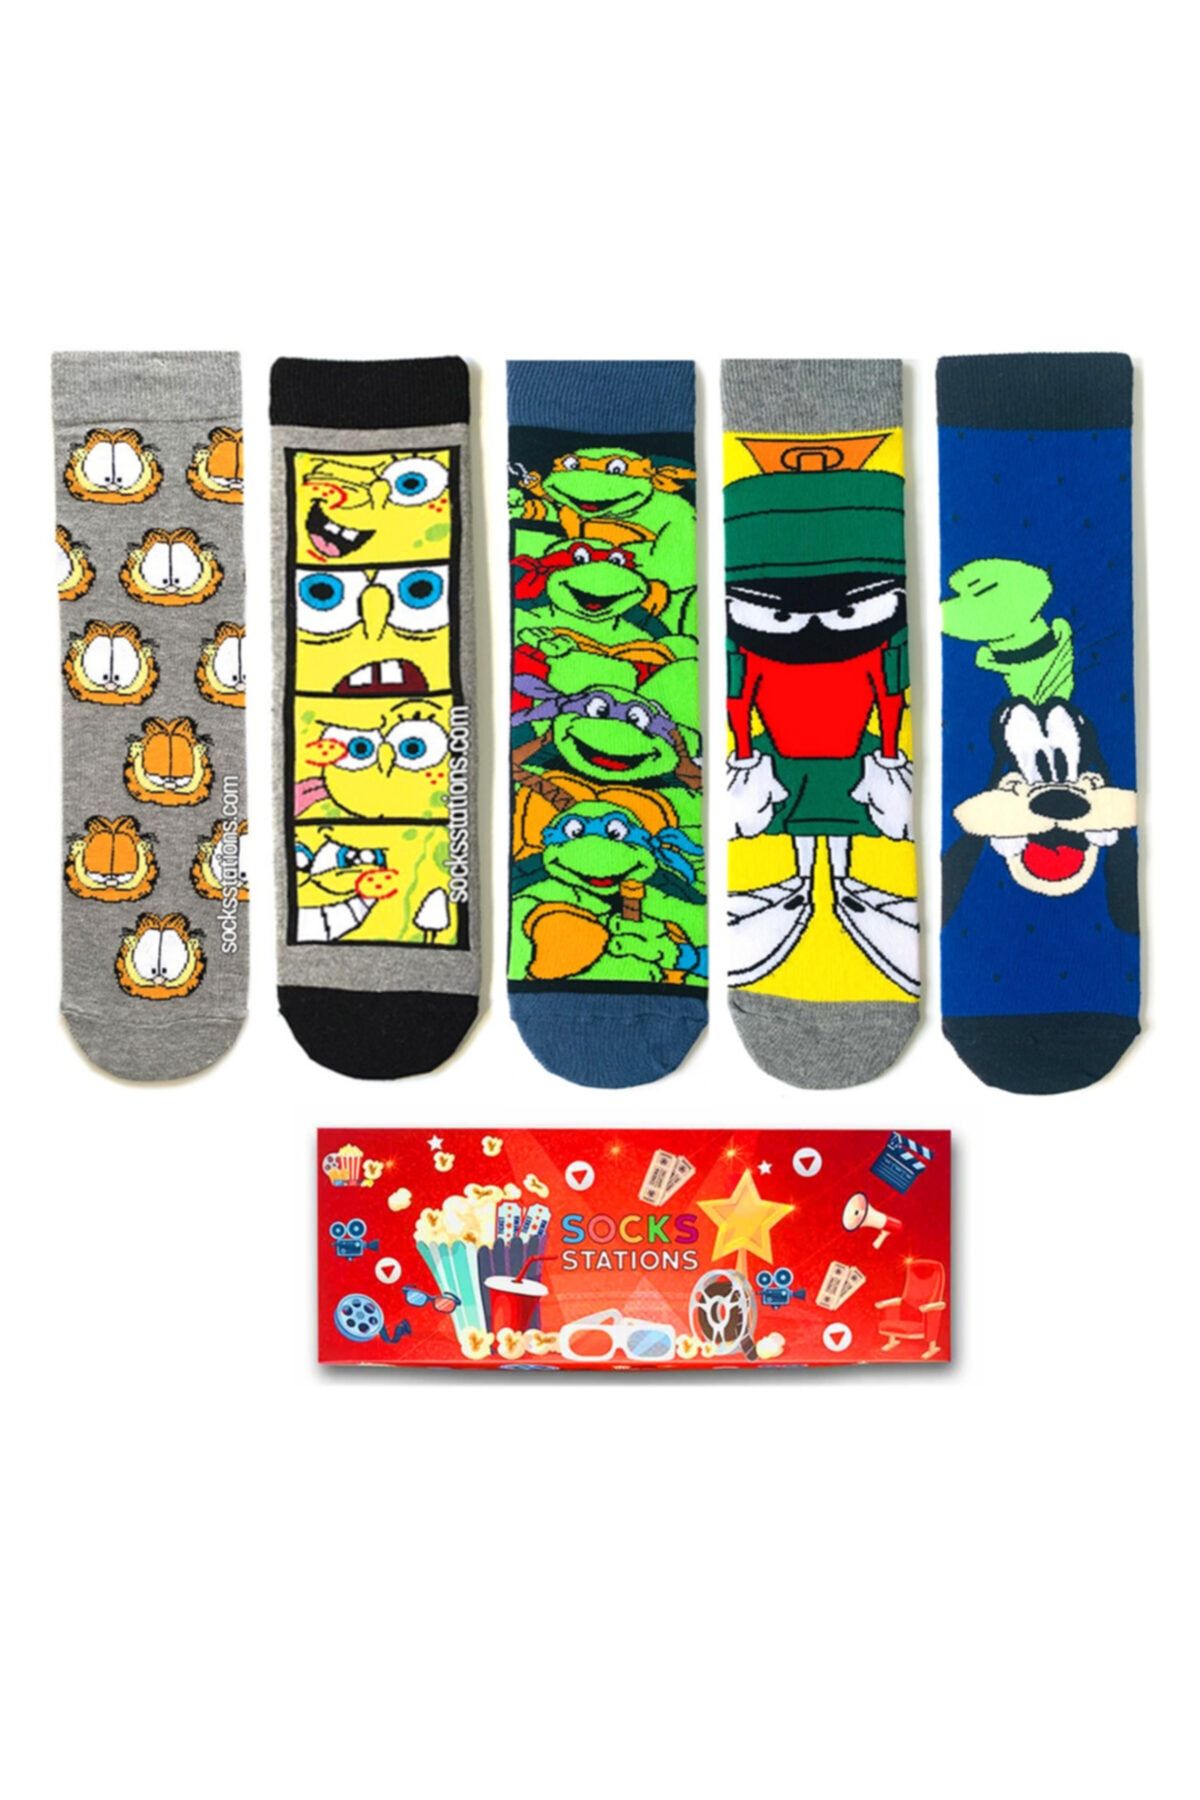 Socks Stations 5’li Çizgi Karakterler Desenli Çorap Özel Kutusu/ Yılbaşı Çorapları Ve Yılbaşı Hediyesi